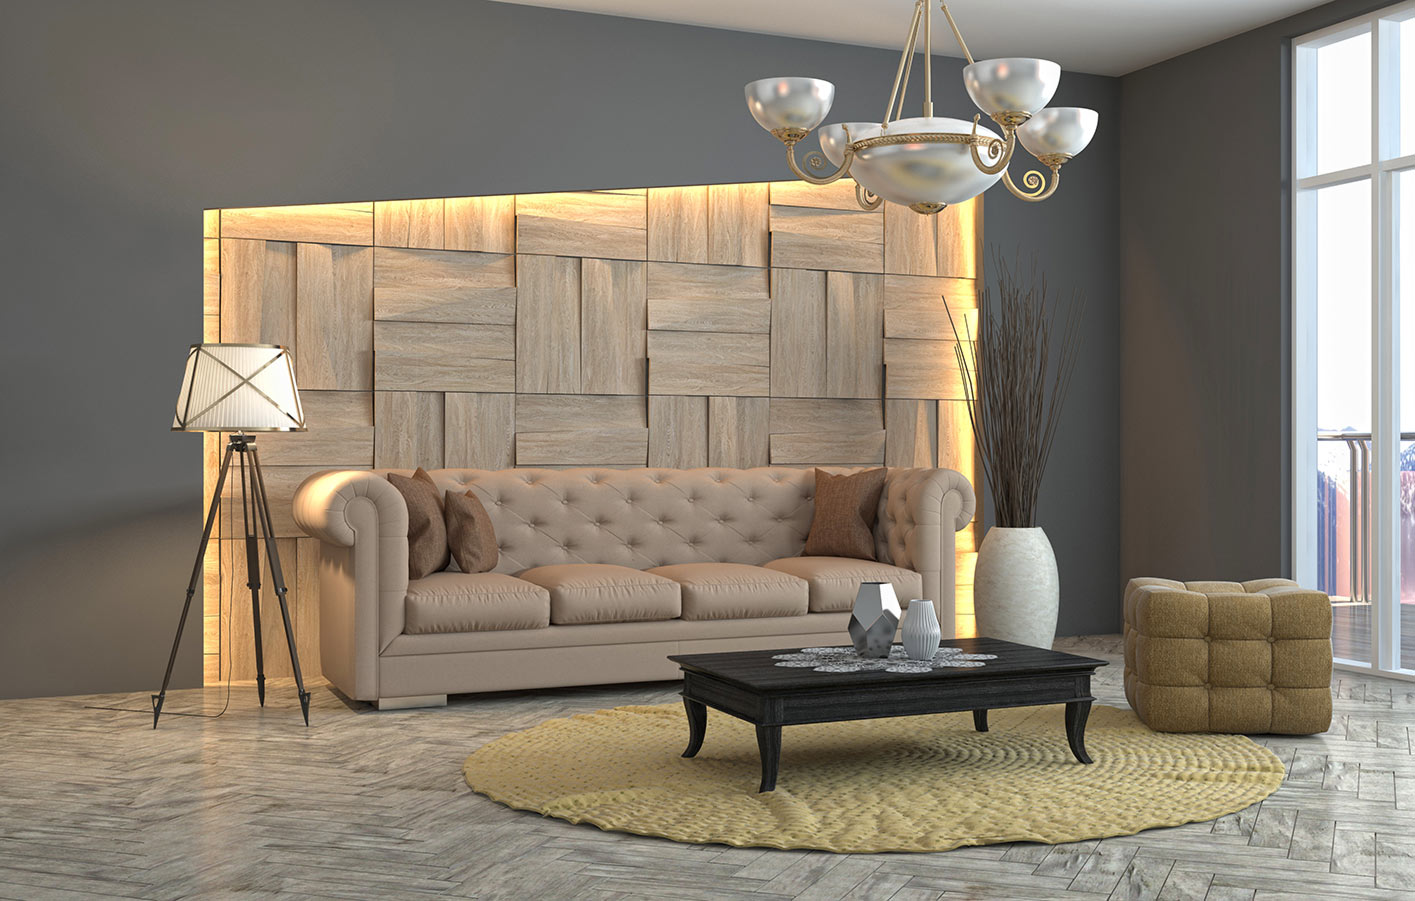 Wandpaneee in 3D in einem Wohnzimmer.